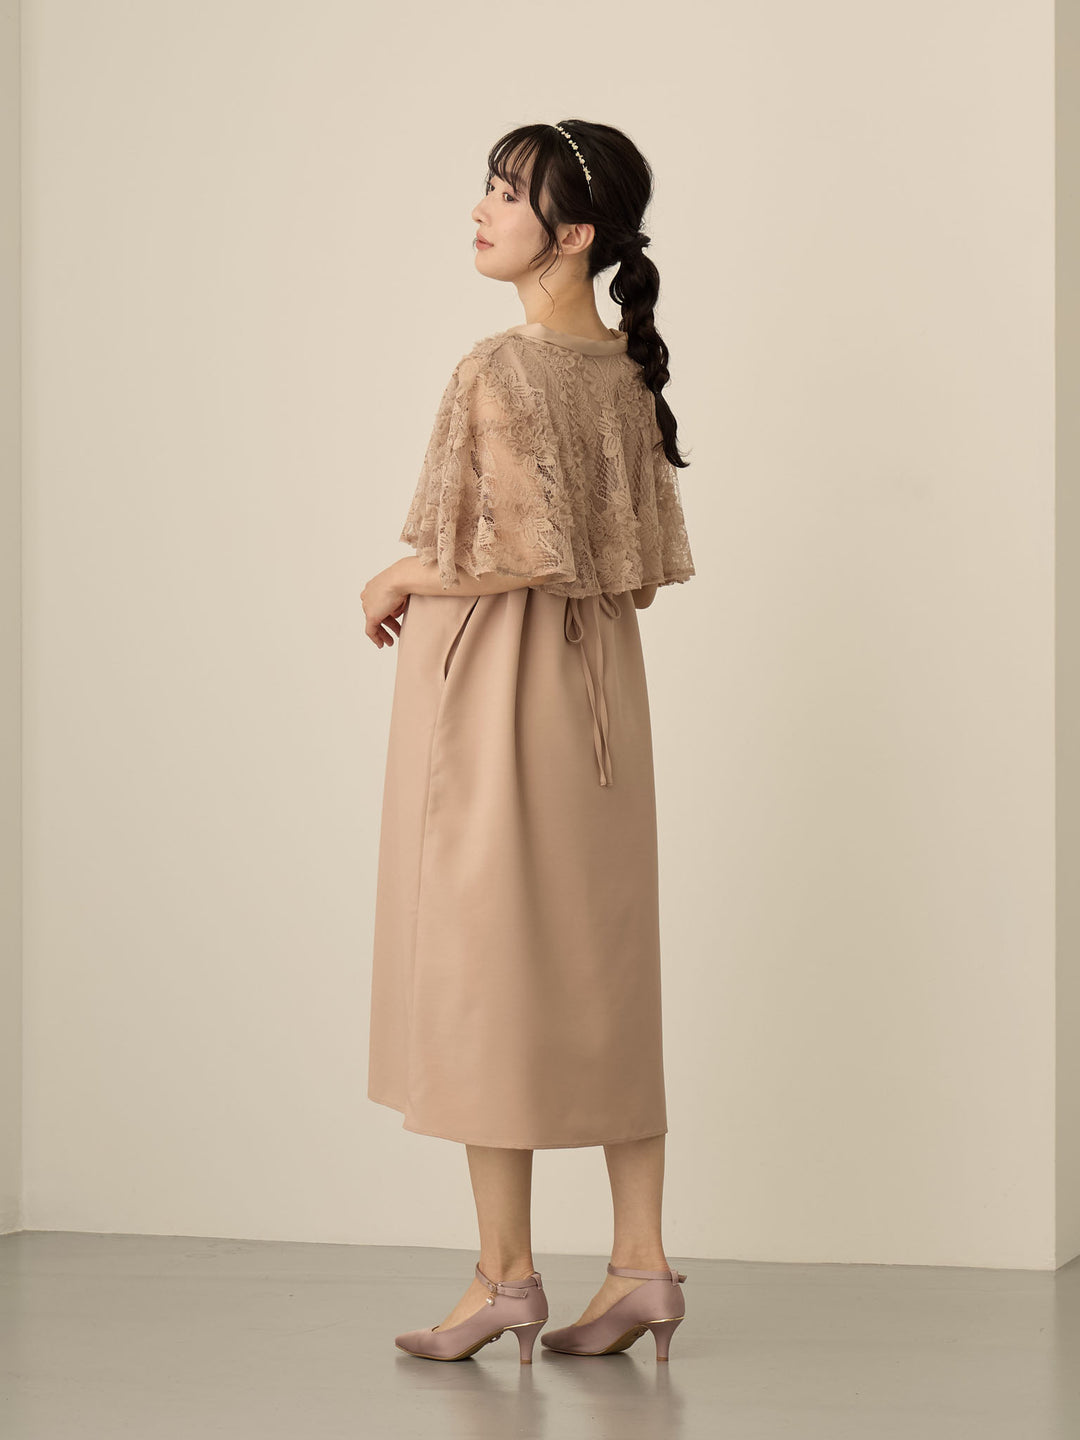 【マタニティ・授乳服】レースケープドレス Pink beige